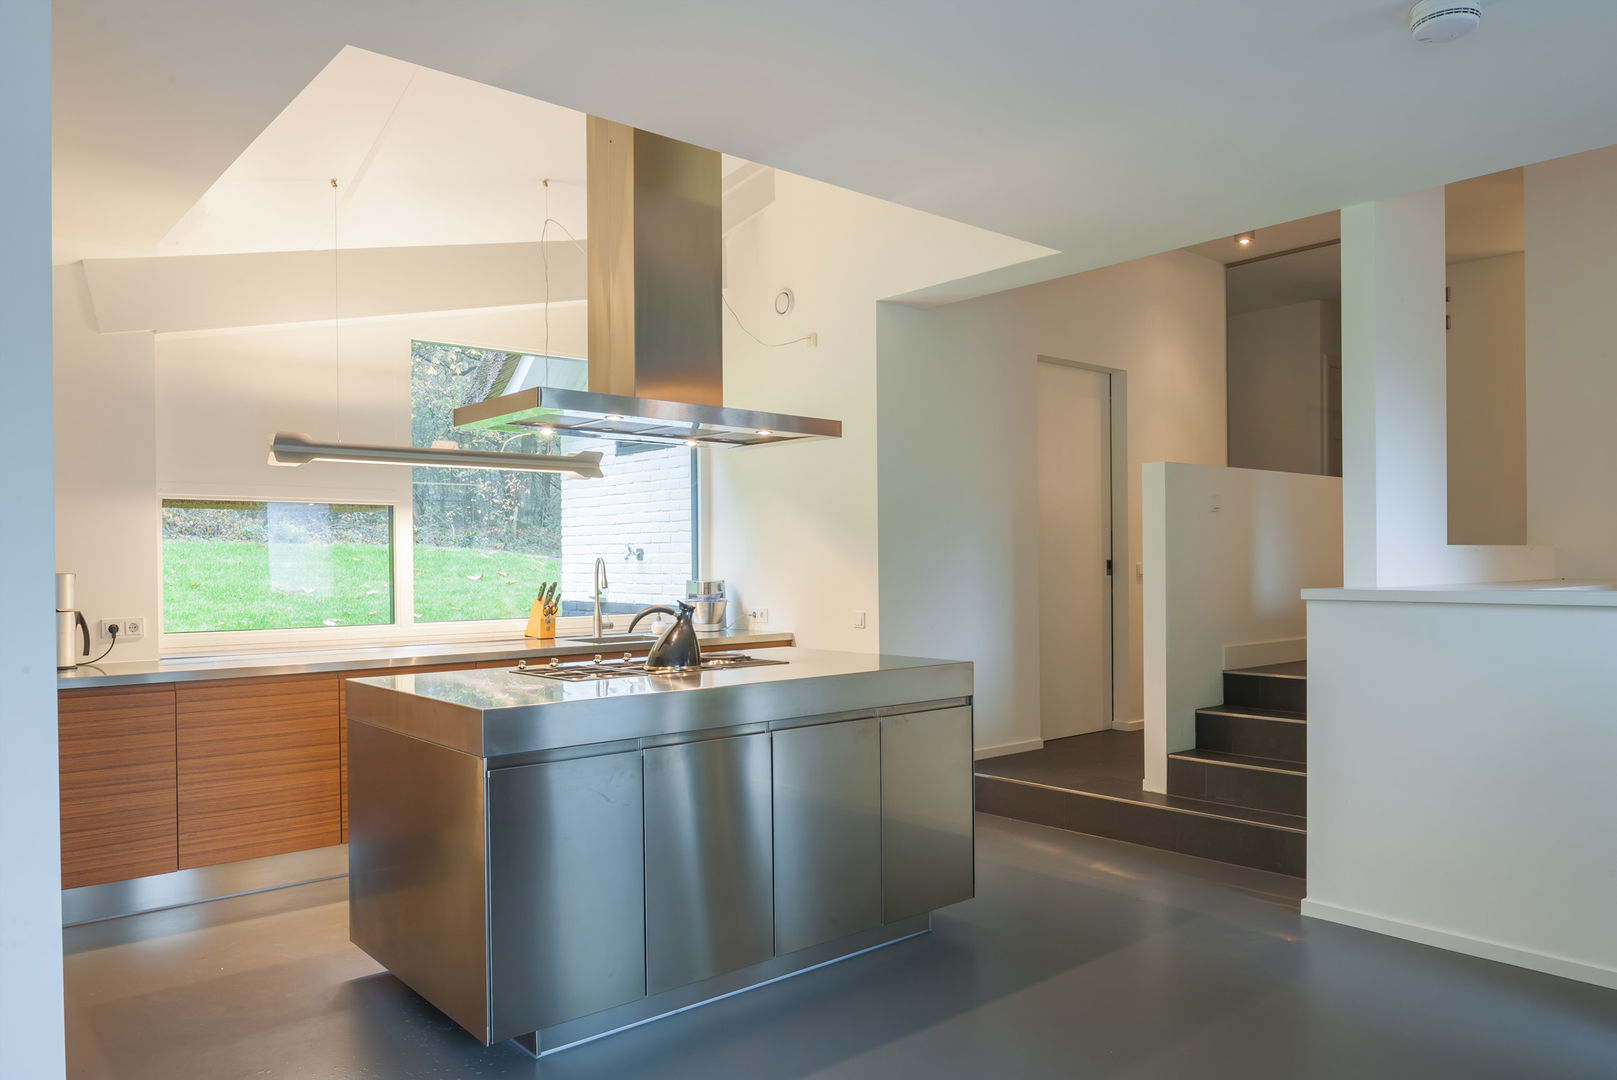 WOONHUIS HOLTEN, Maas Architecten Maas Architecten Modern style kitchen